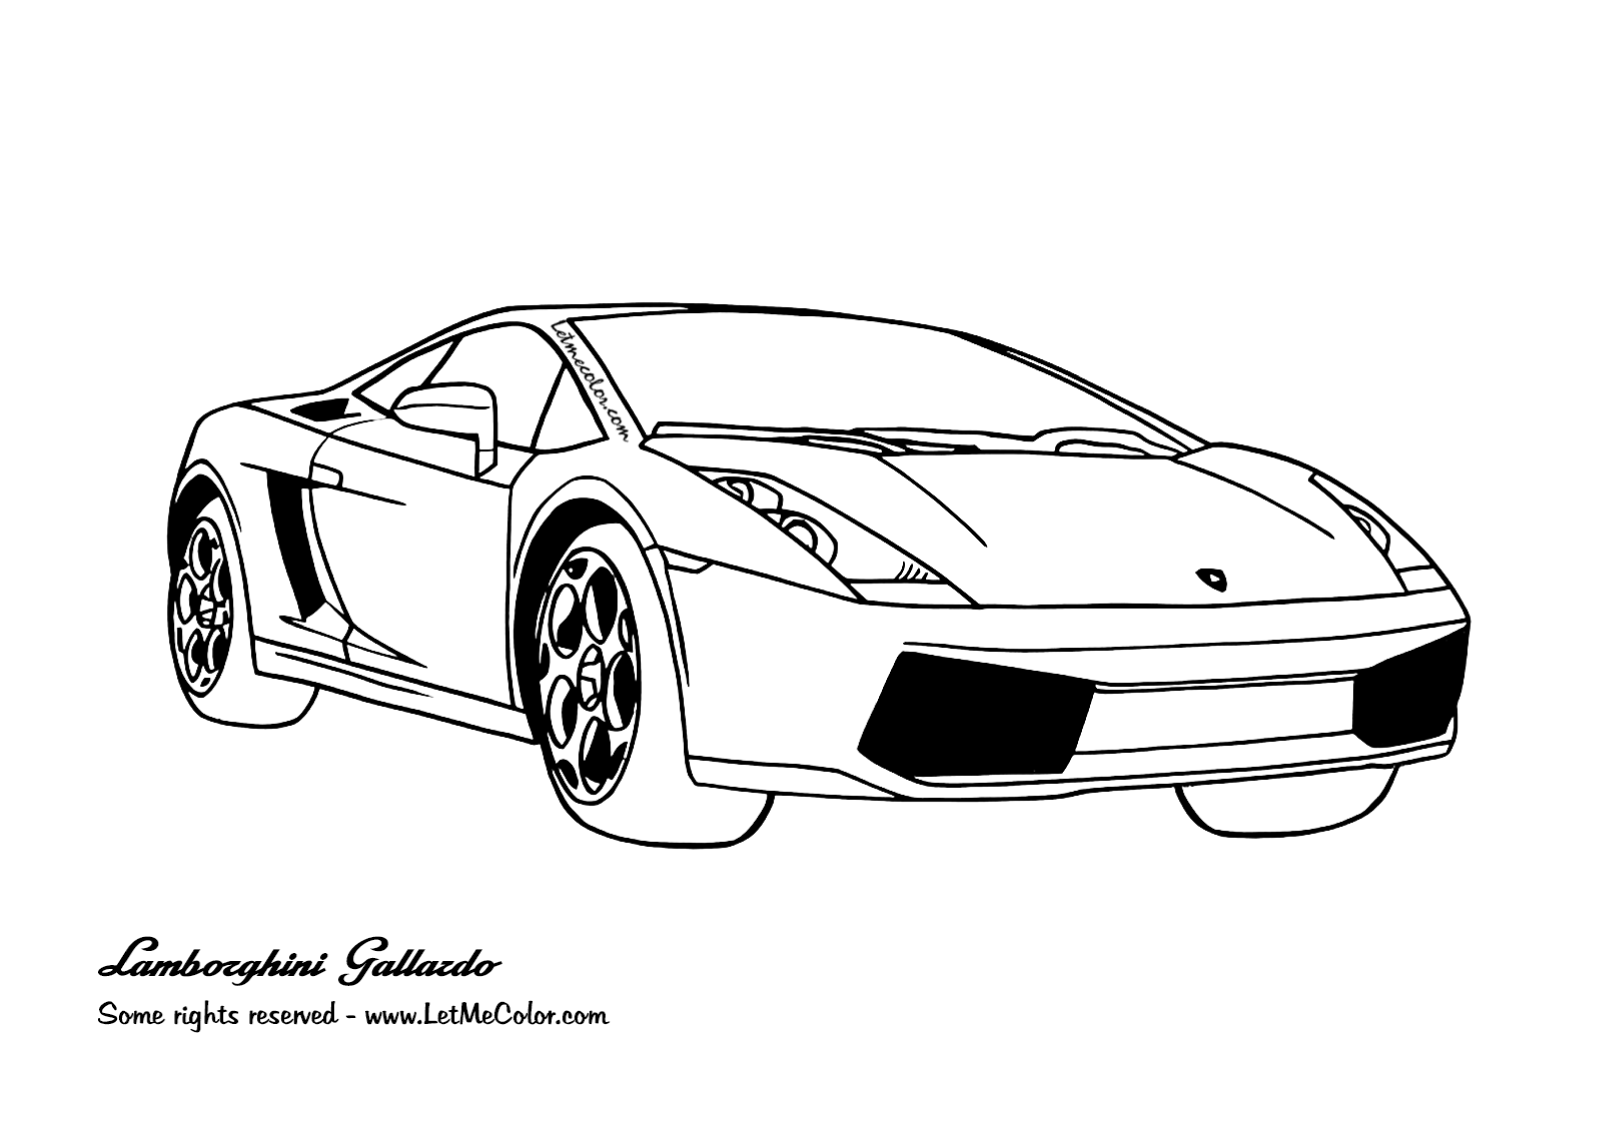 Lamborghini gallardo coloring page